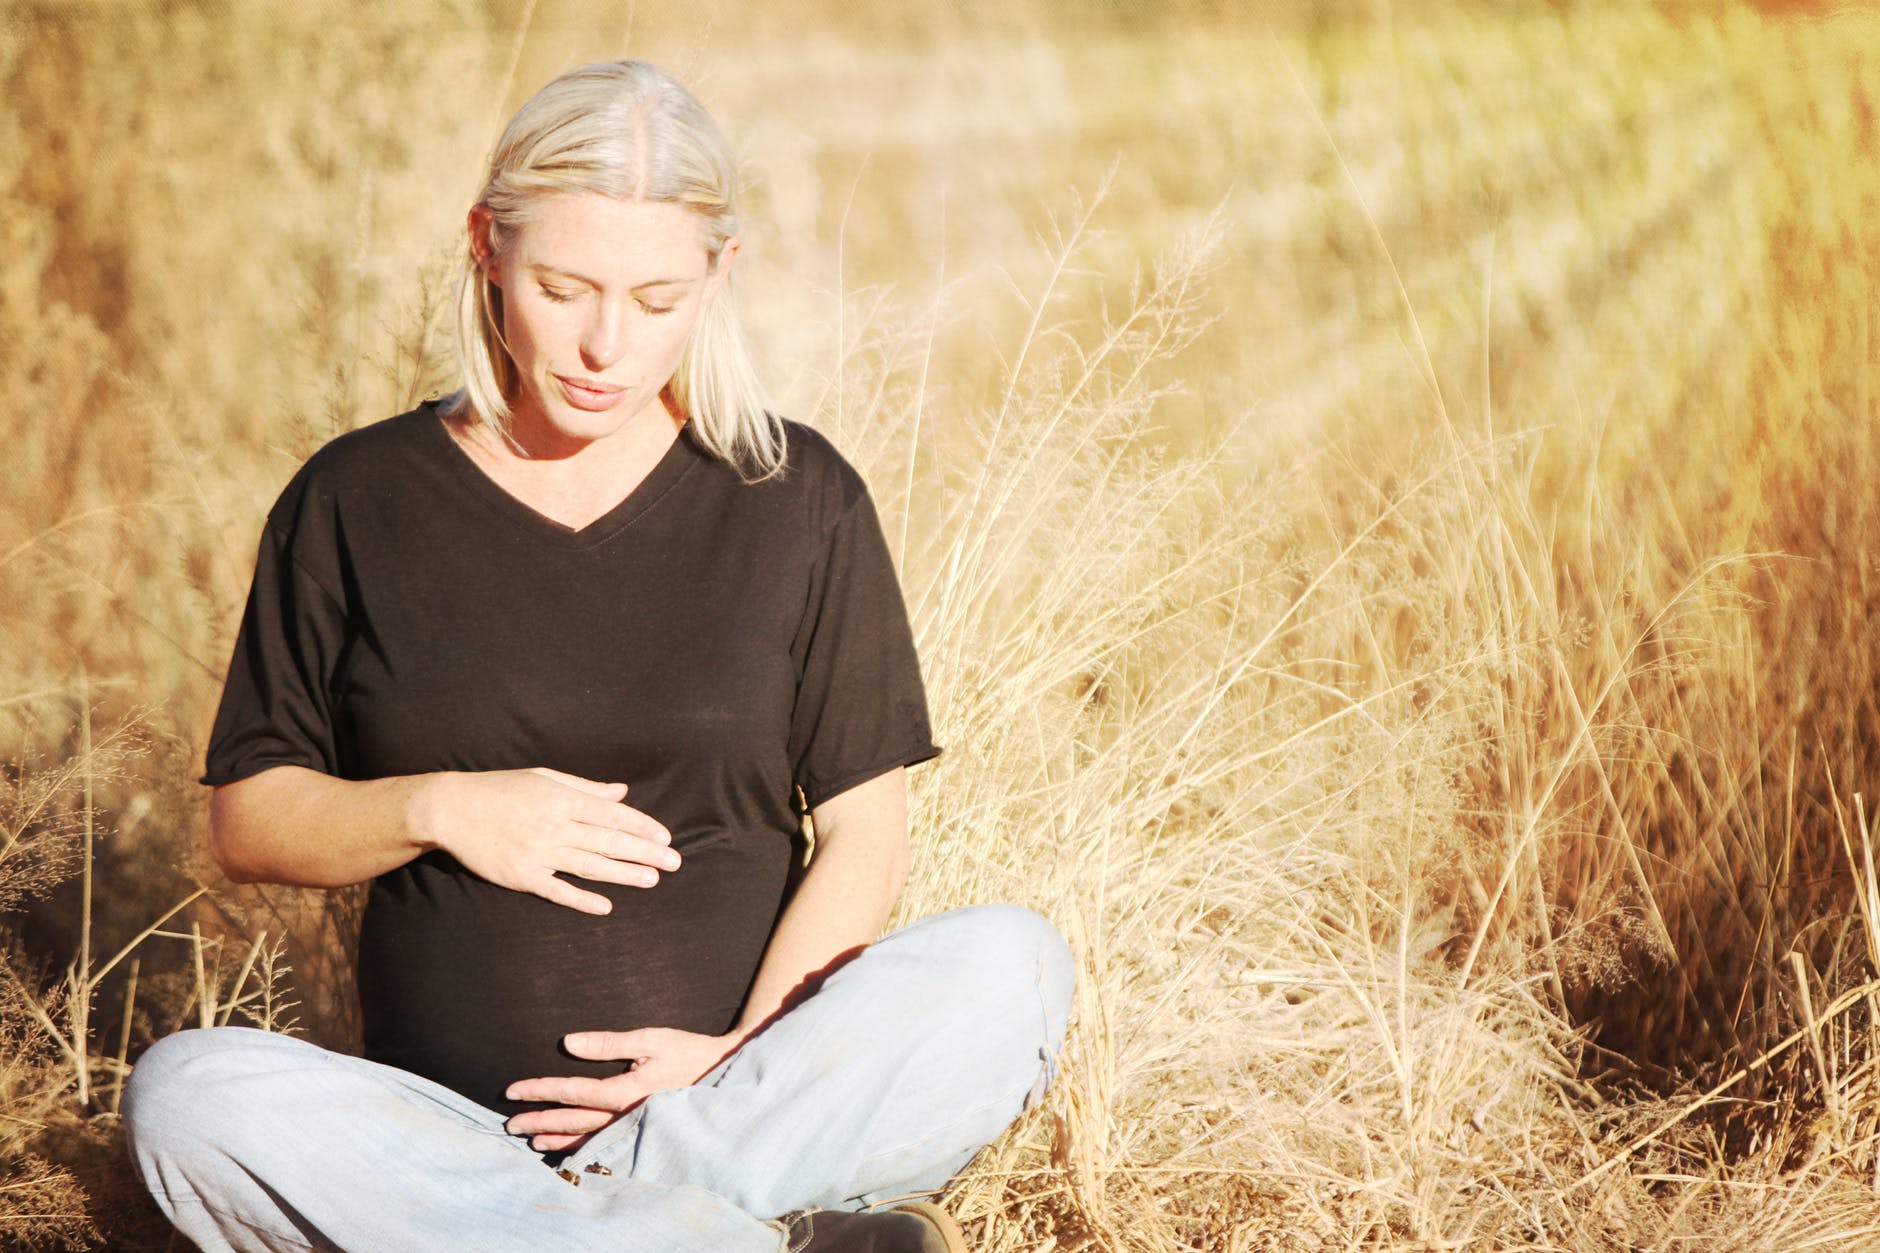 Τι προκαλεί την αποβολή στην εγκυμοσύνη;